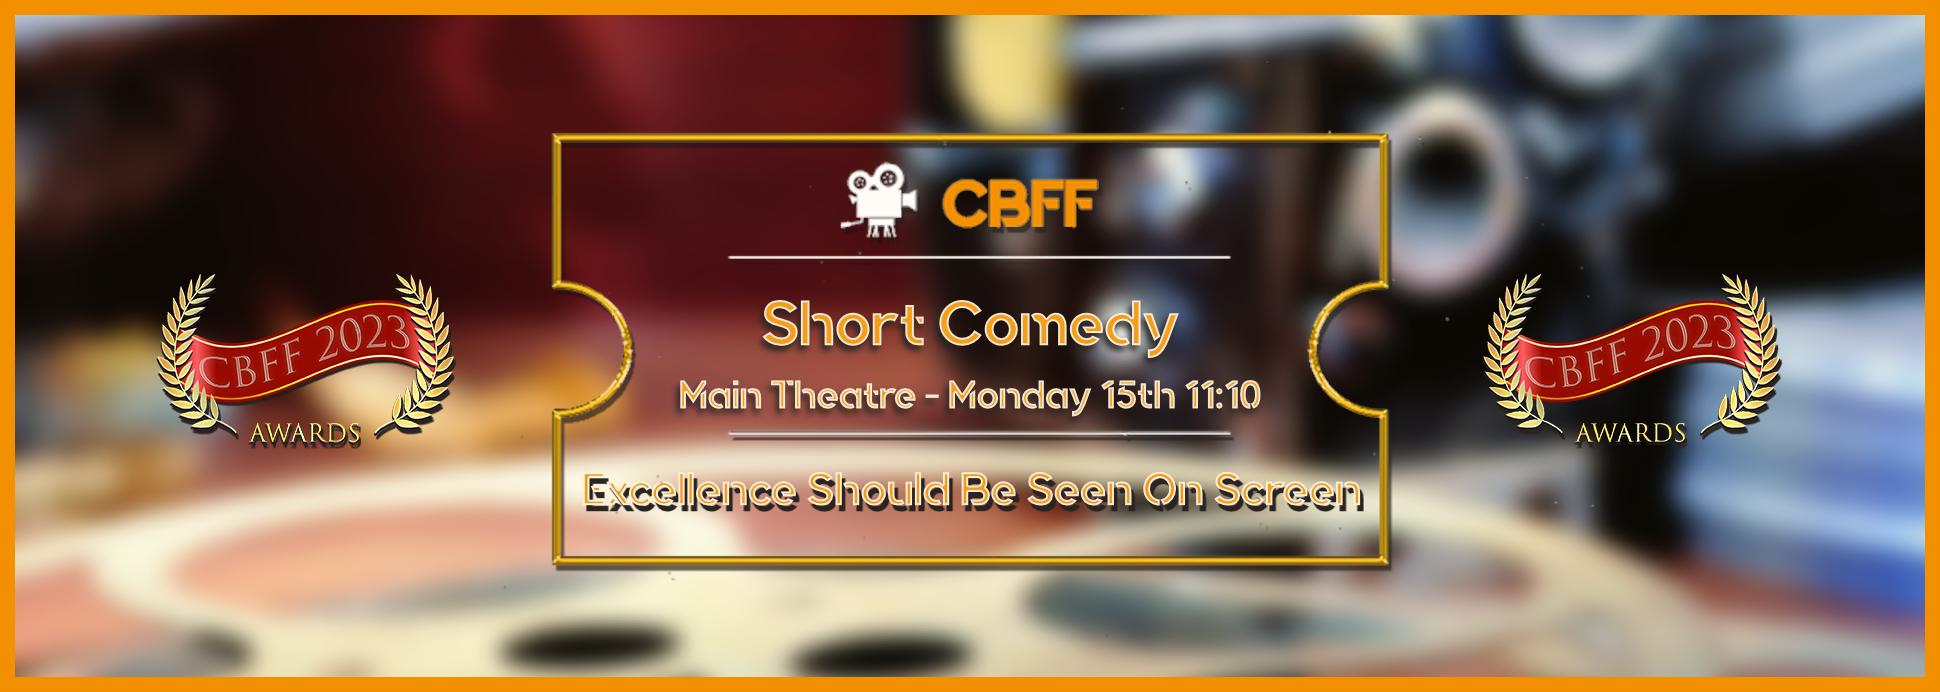 Main Theatre Short Comedy15th 11:10